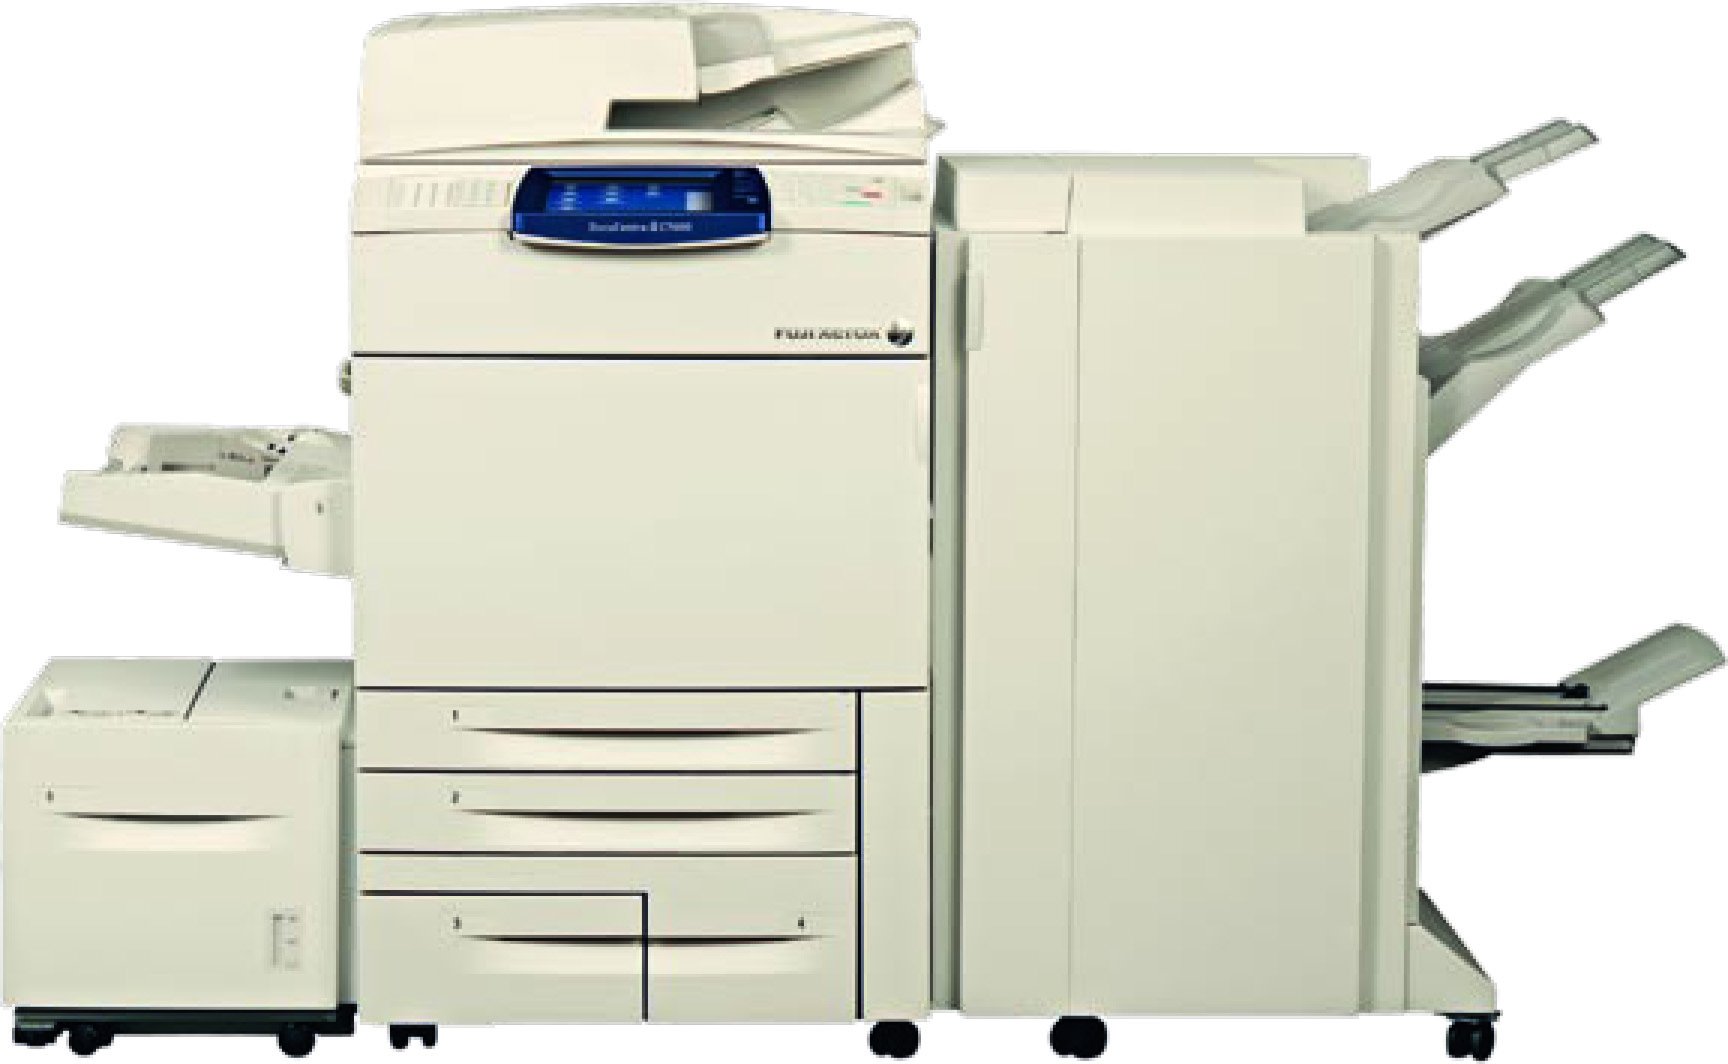 Fuji Xerox DocuCentre-III C6500